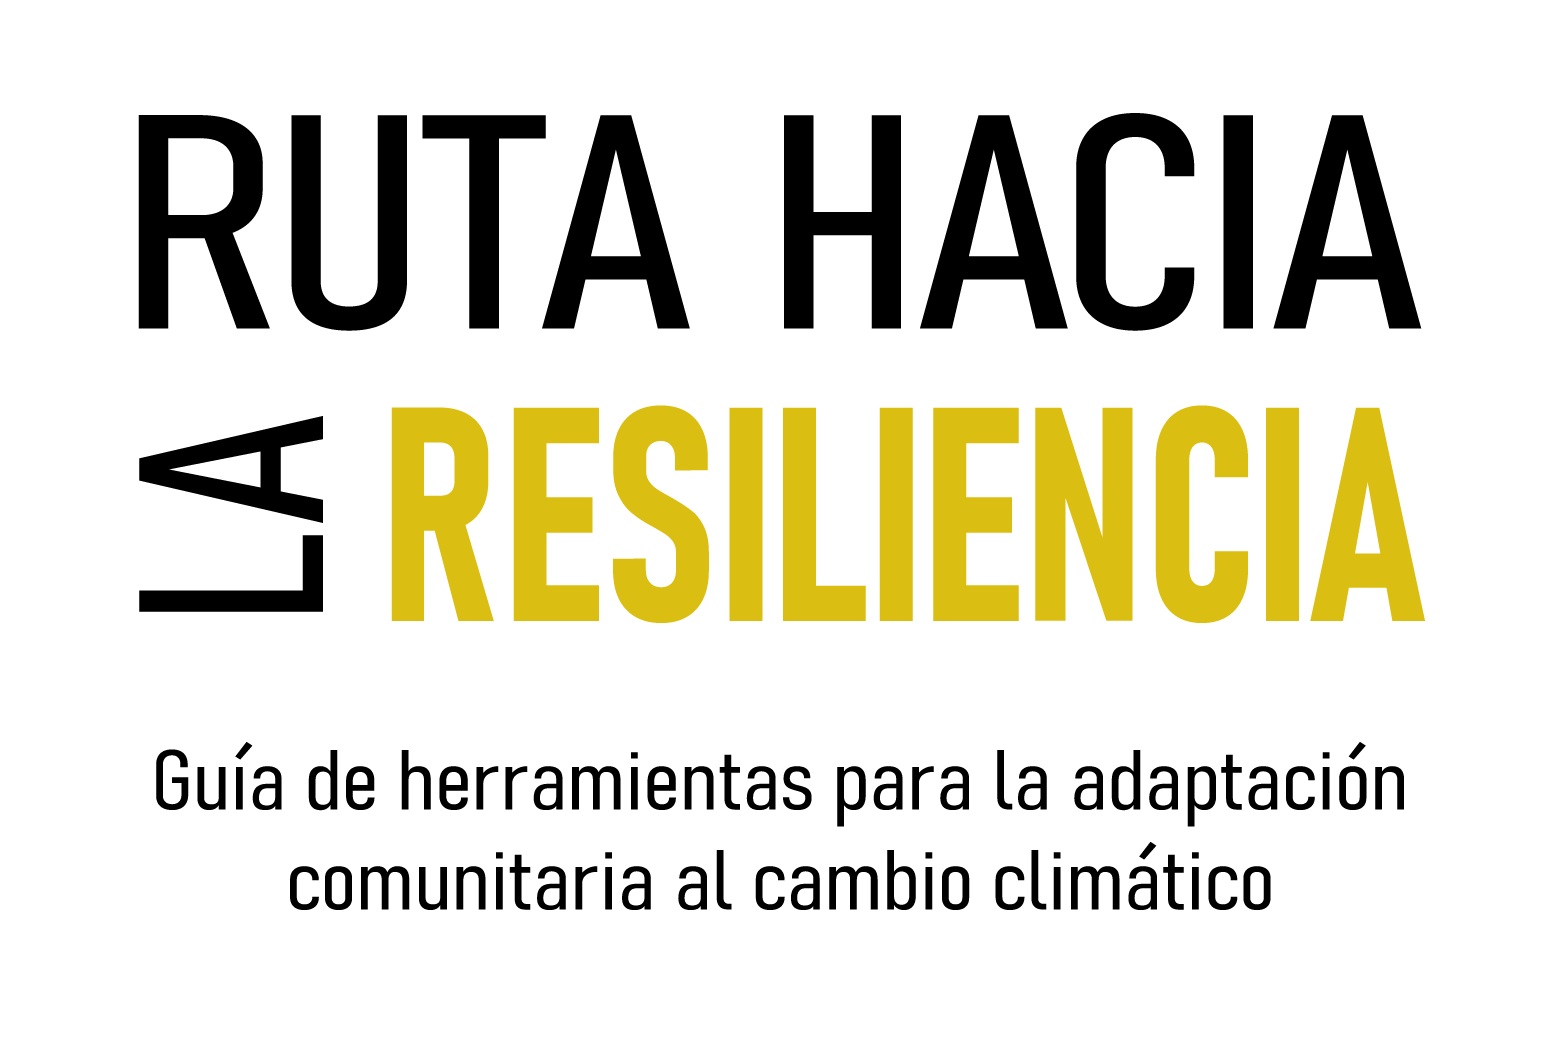 Ruta hacia la resiliencia: Guía de herramientas para la adaptación comunitaria al cambio climático.